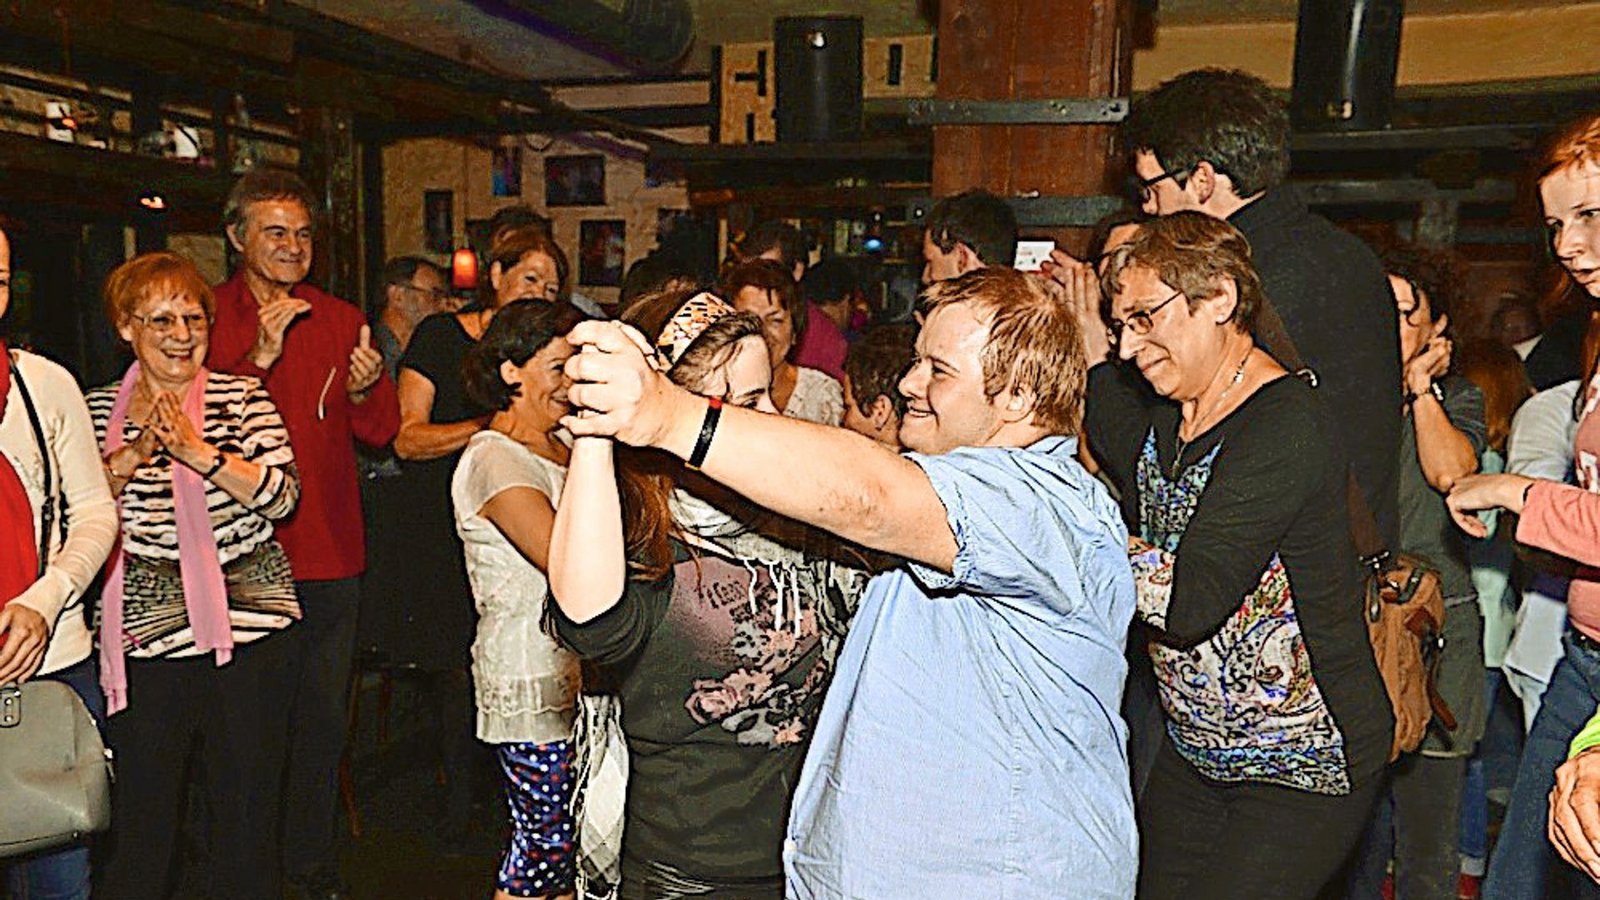 Tanzen ist Interaktion zwischen Menschen – so werden Vereinsamung und Ausgrenzung gestoppt.Foto: Zeit zum Tanzen/Jutta Schüle